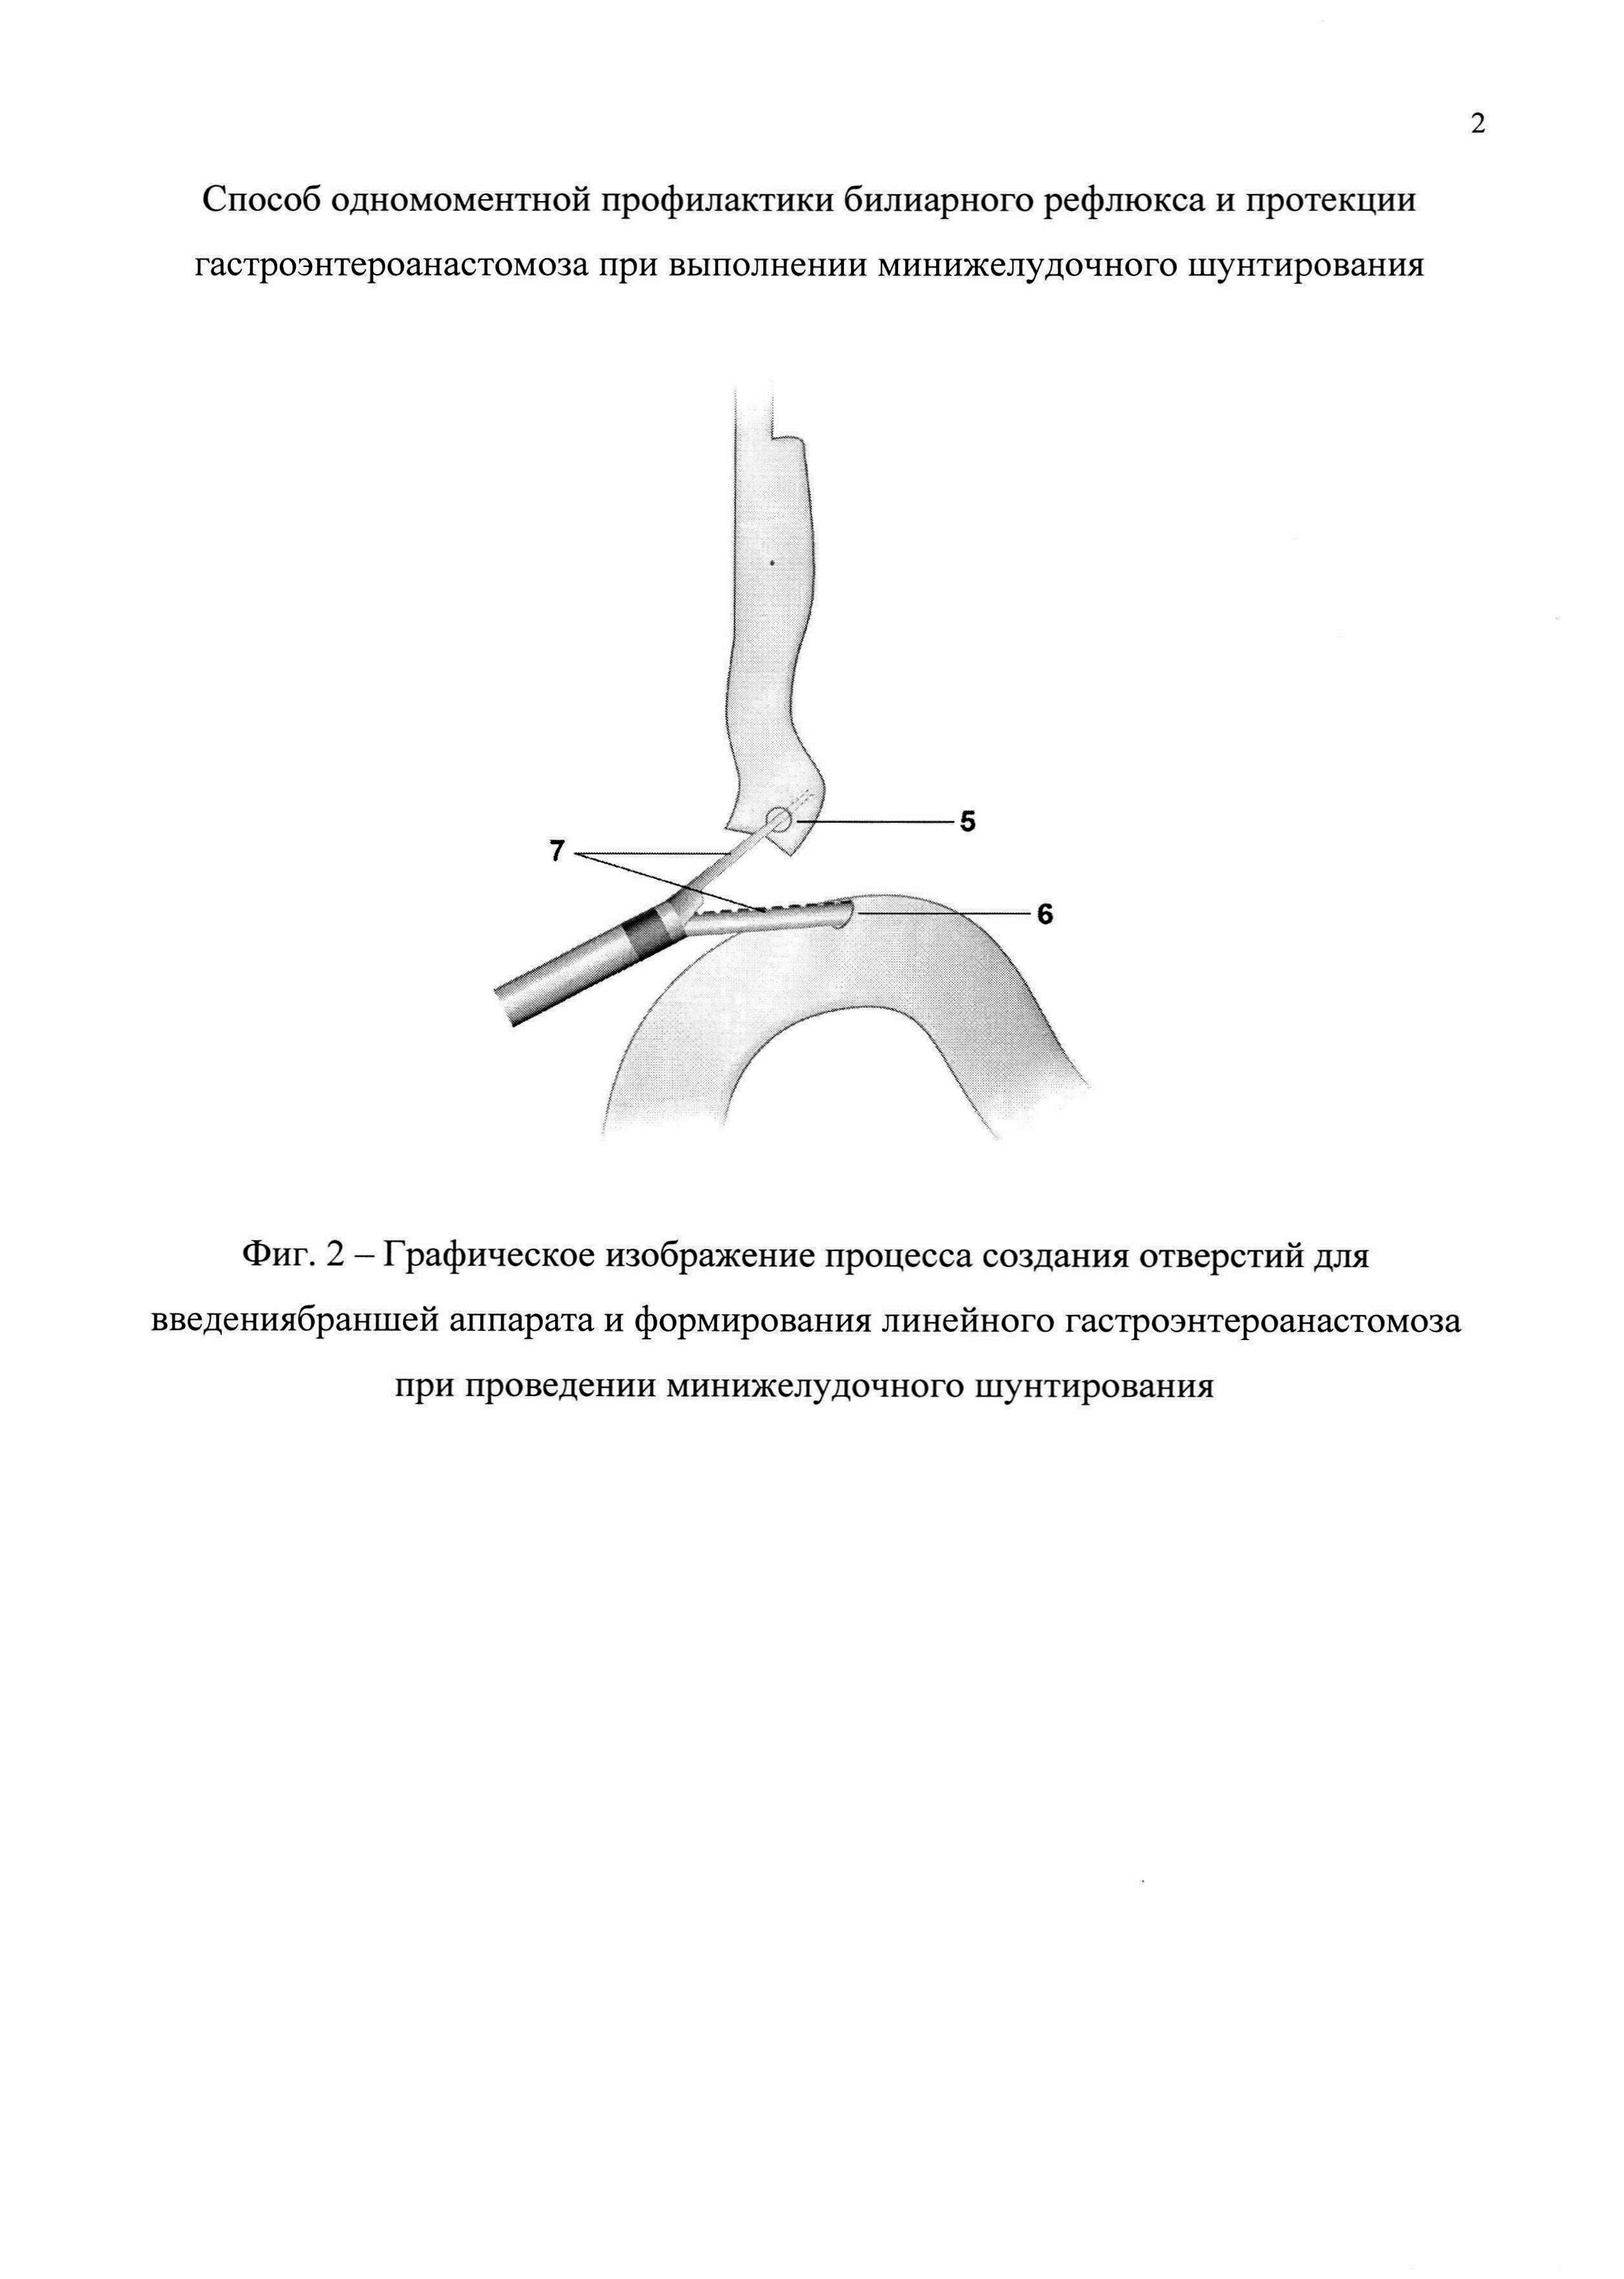 Способ одномоментной профилактики билиарного рефлюкса и протекции гастроэнтероанастомоза при выполнении минижелудочного шунтирования